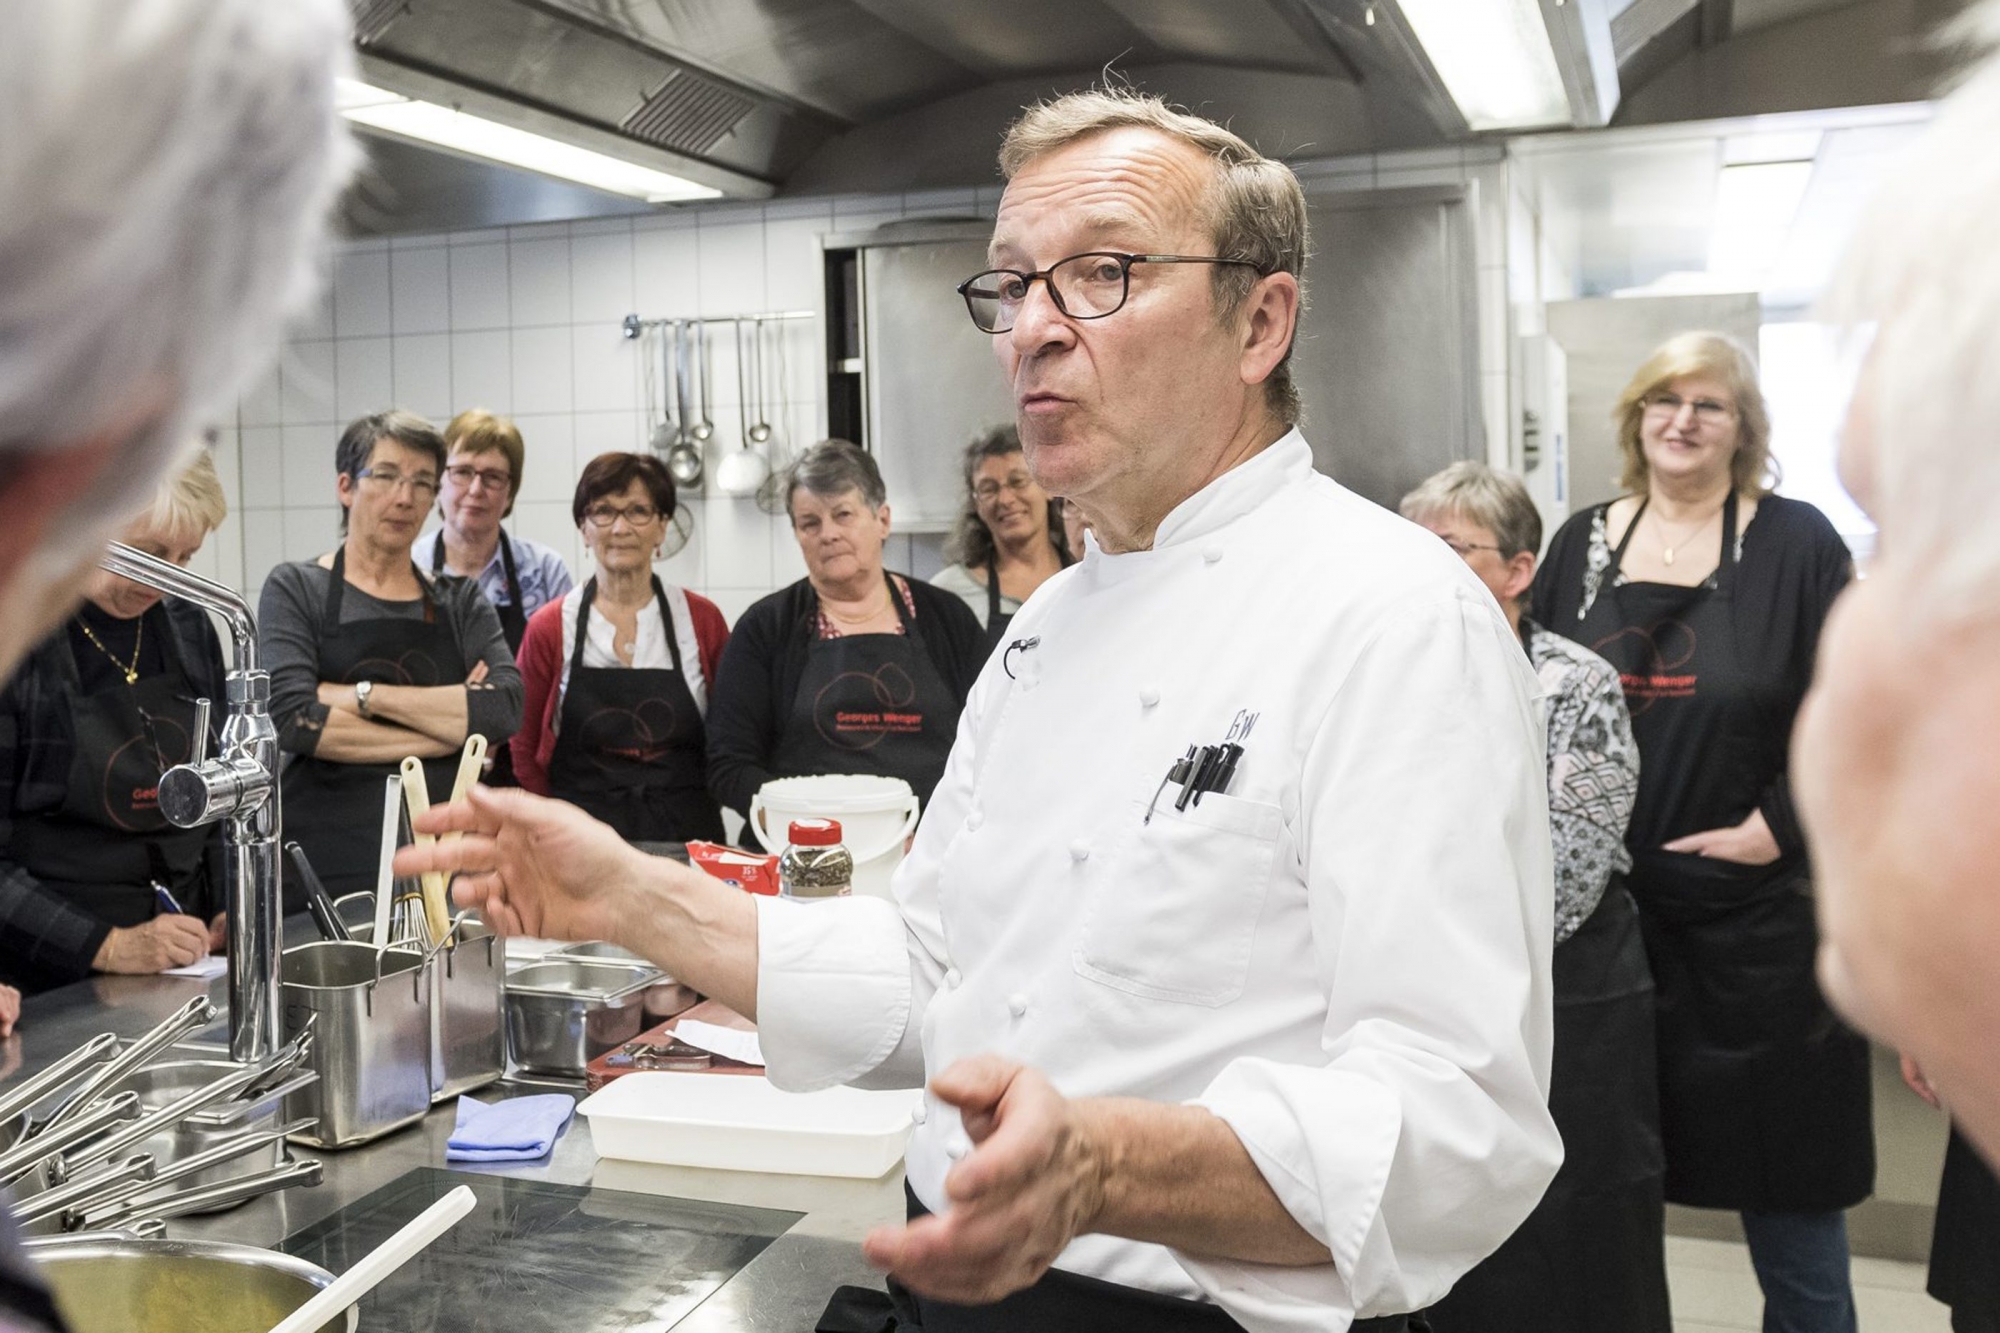 Georges Wenger, 18 points au Gault & Millau 2018, aime transmettre son amour de la cuisine, comme ici avec des bénévoles de Pro Senectute.